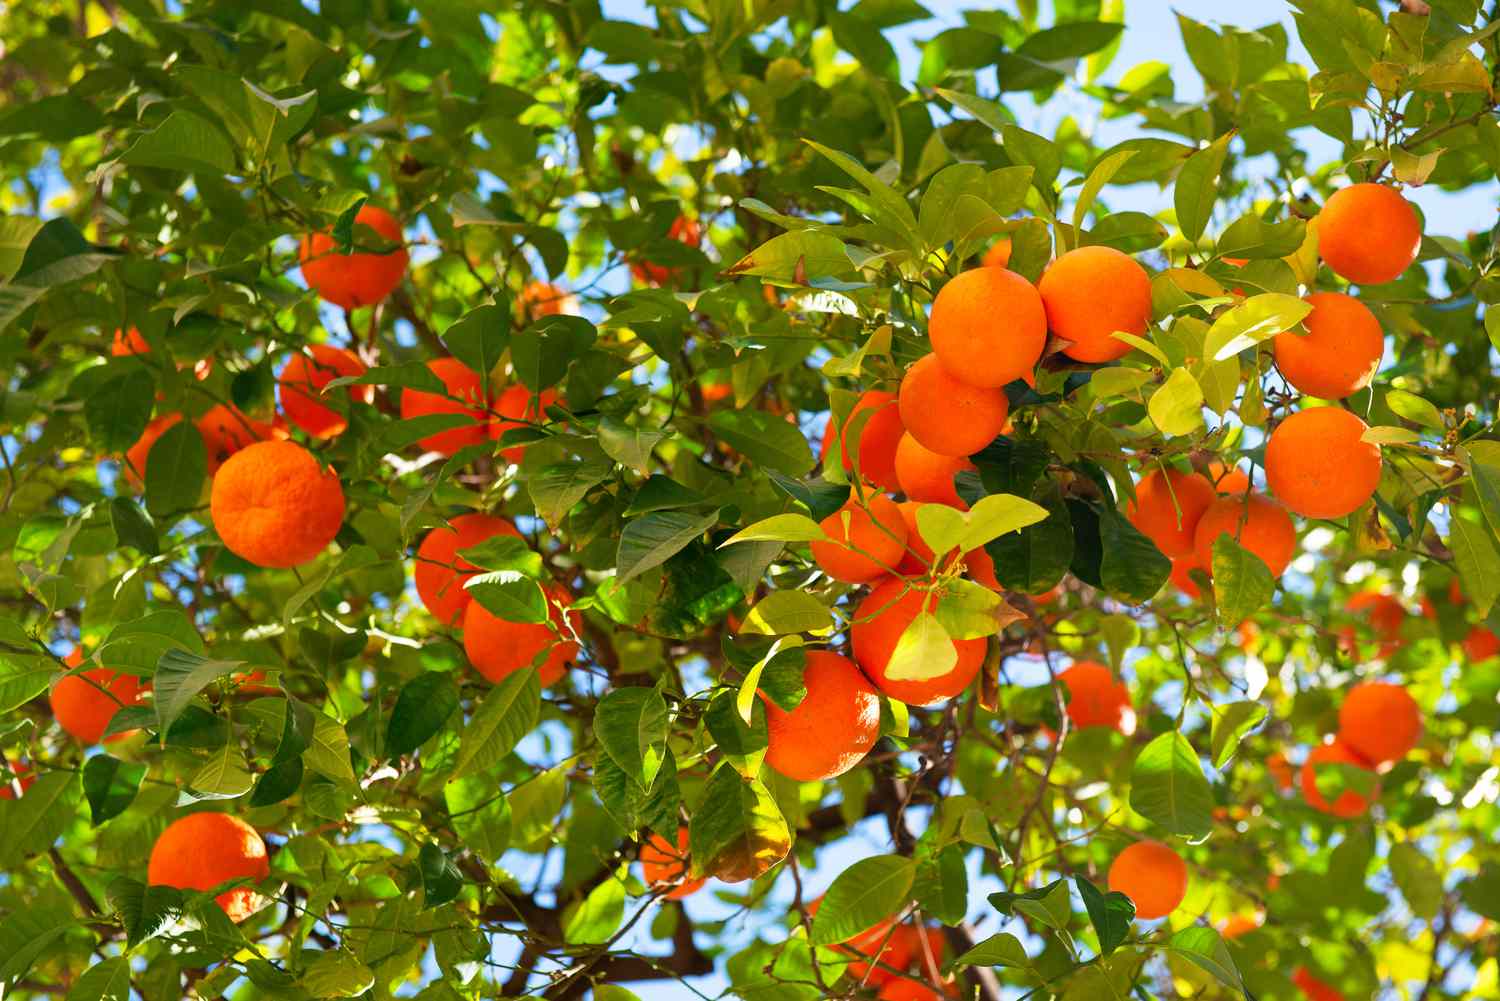 Satsuma-Baumzweige mit runden orangefarbenen Früchten, die unter den Zweigen hängen